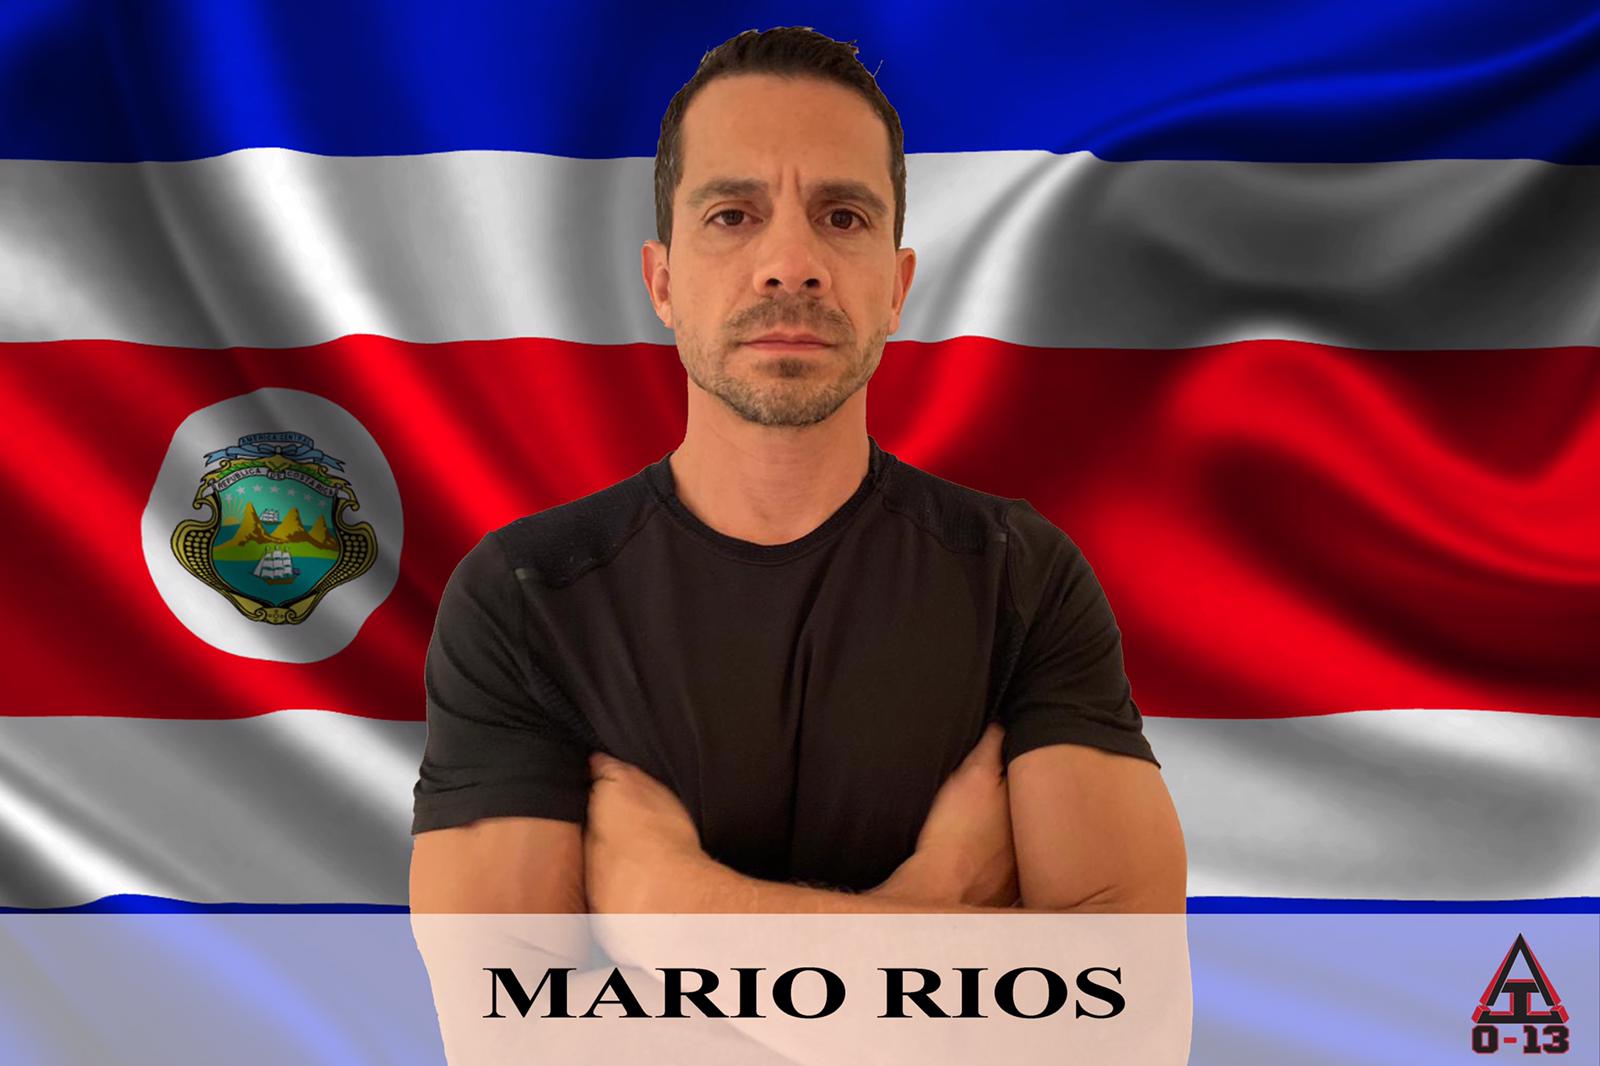 Mario Rios